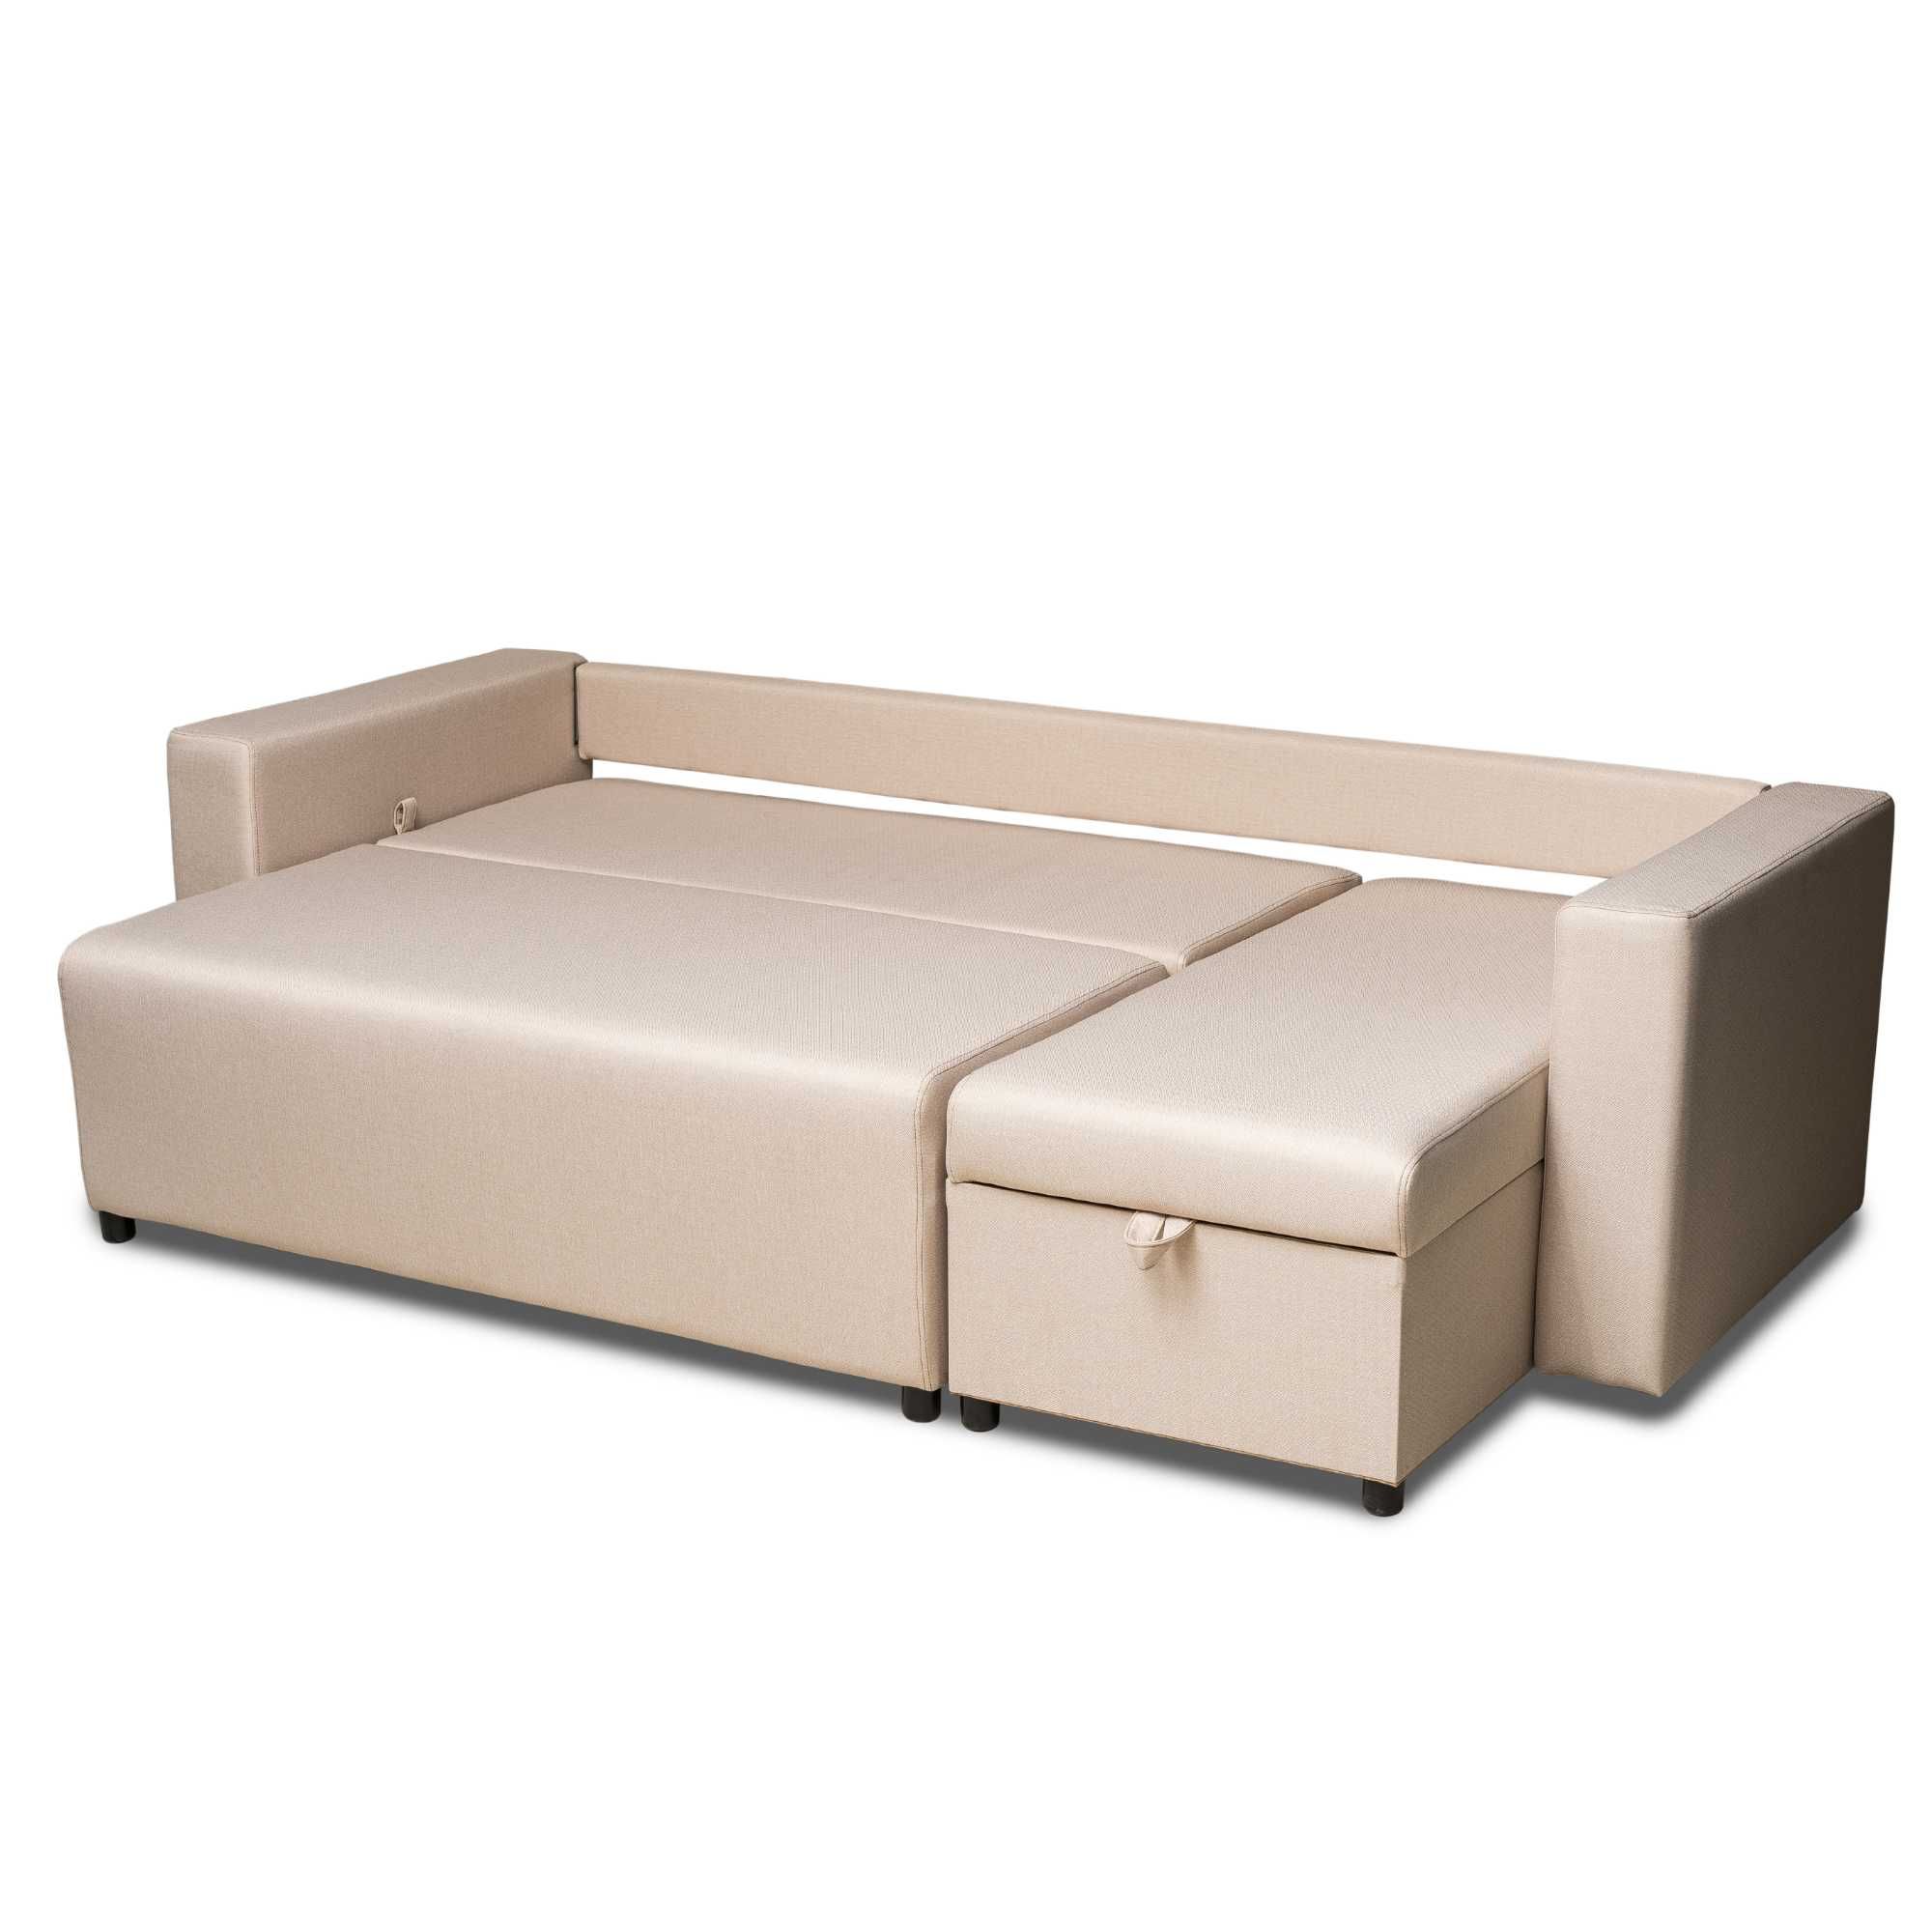 Новый диван угловой Сити 3 бежевый мягкая мебель Доставка бесплатно